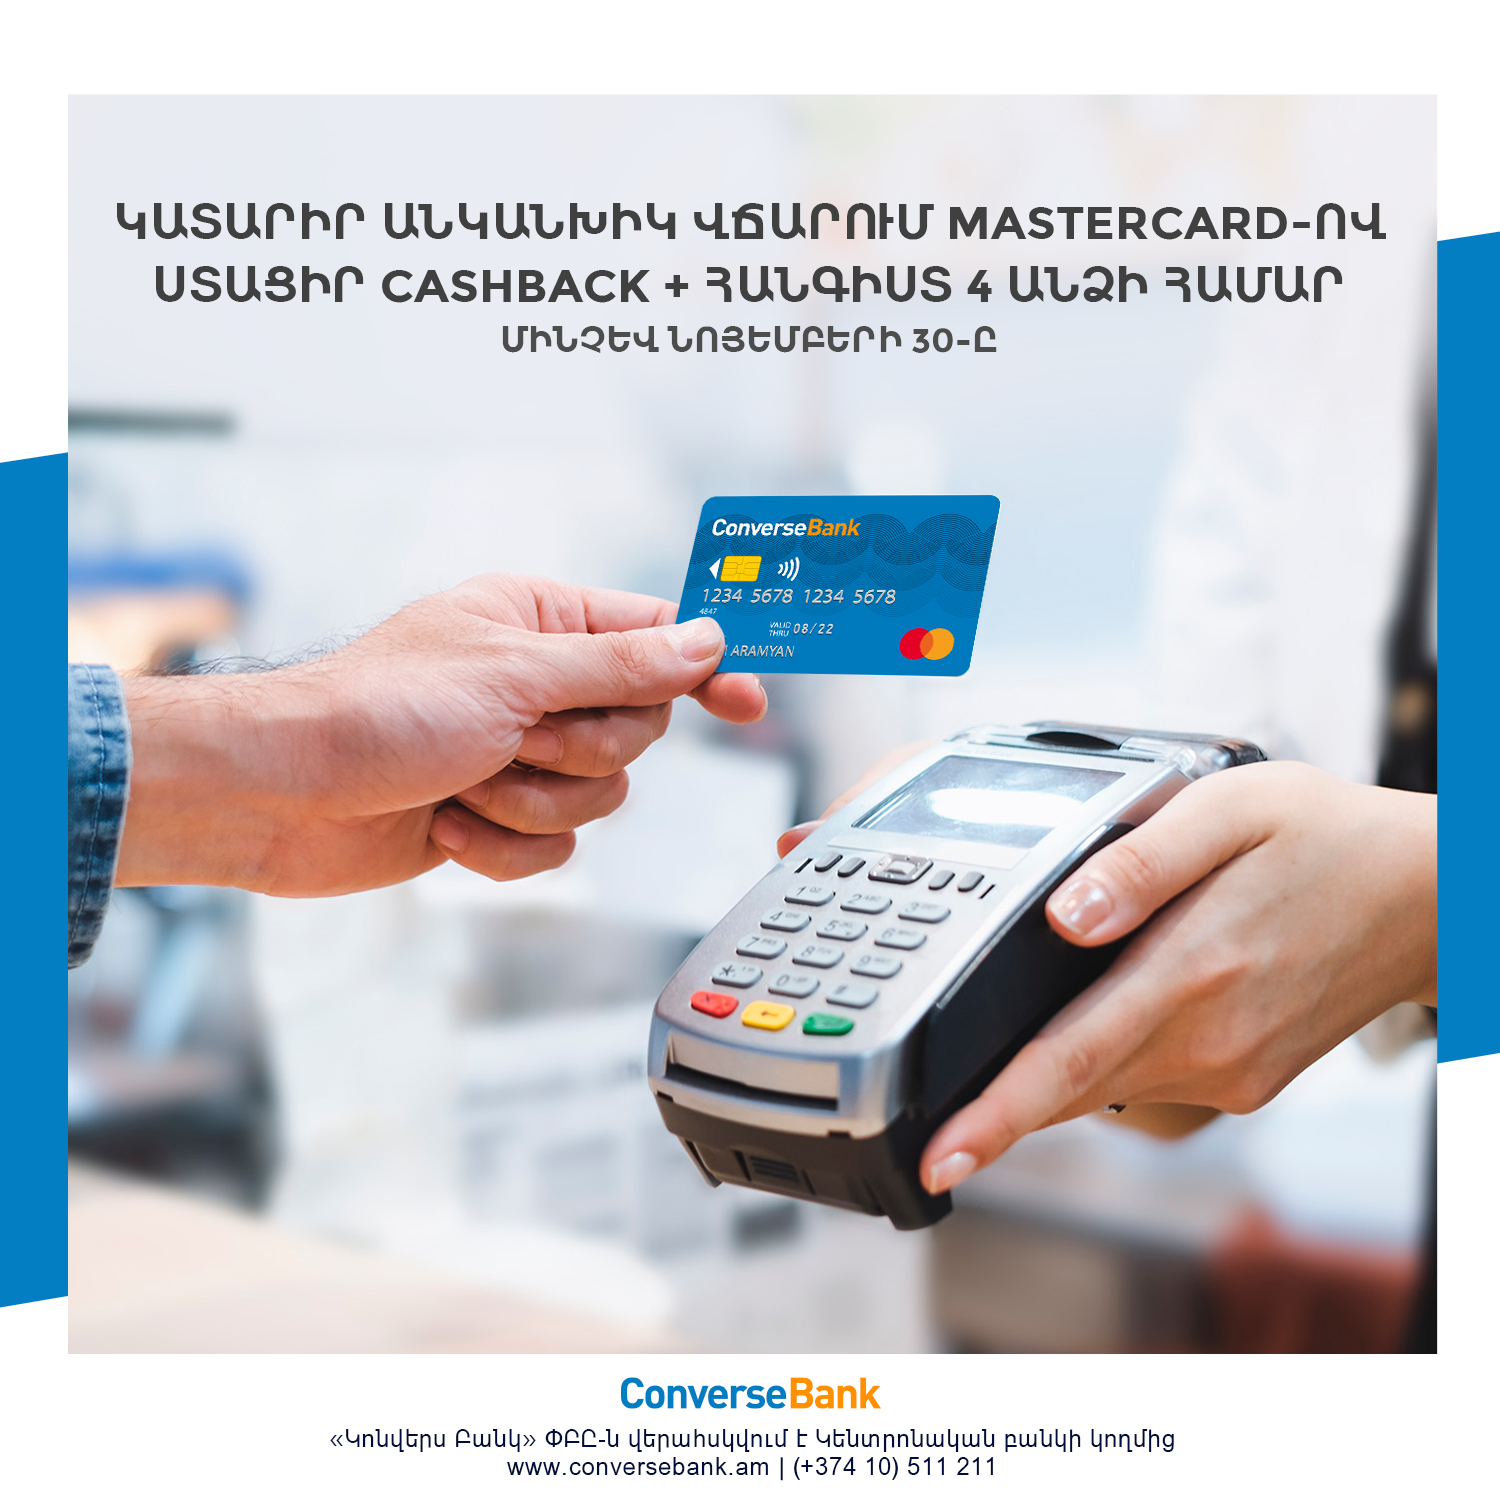 Трехдневный отдых и кэшбэк - новое предложение для держателей карт MasterCard Конверс Банка